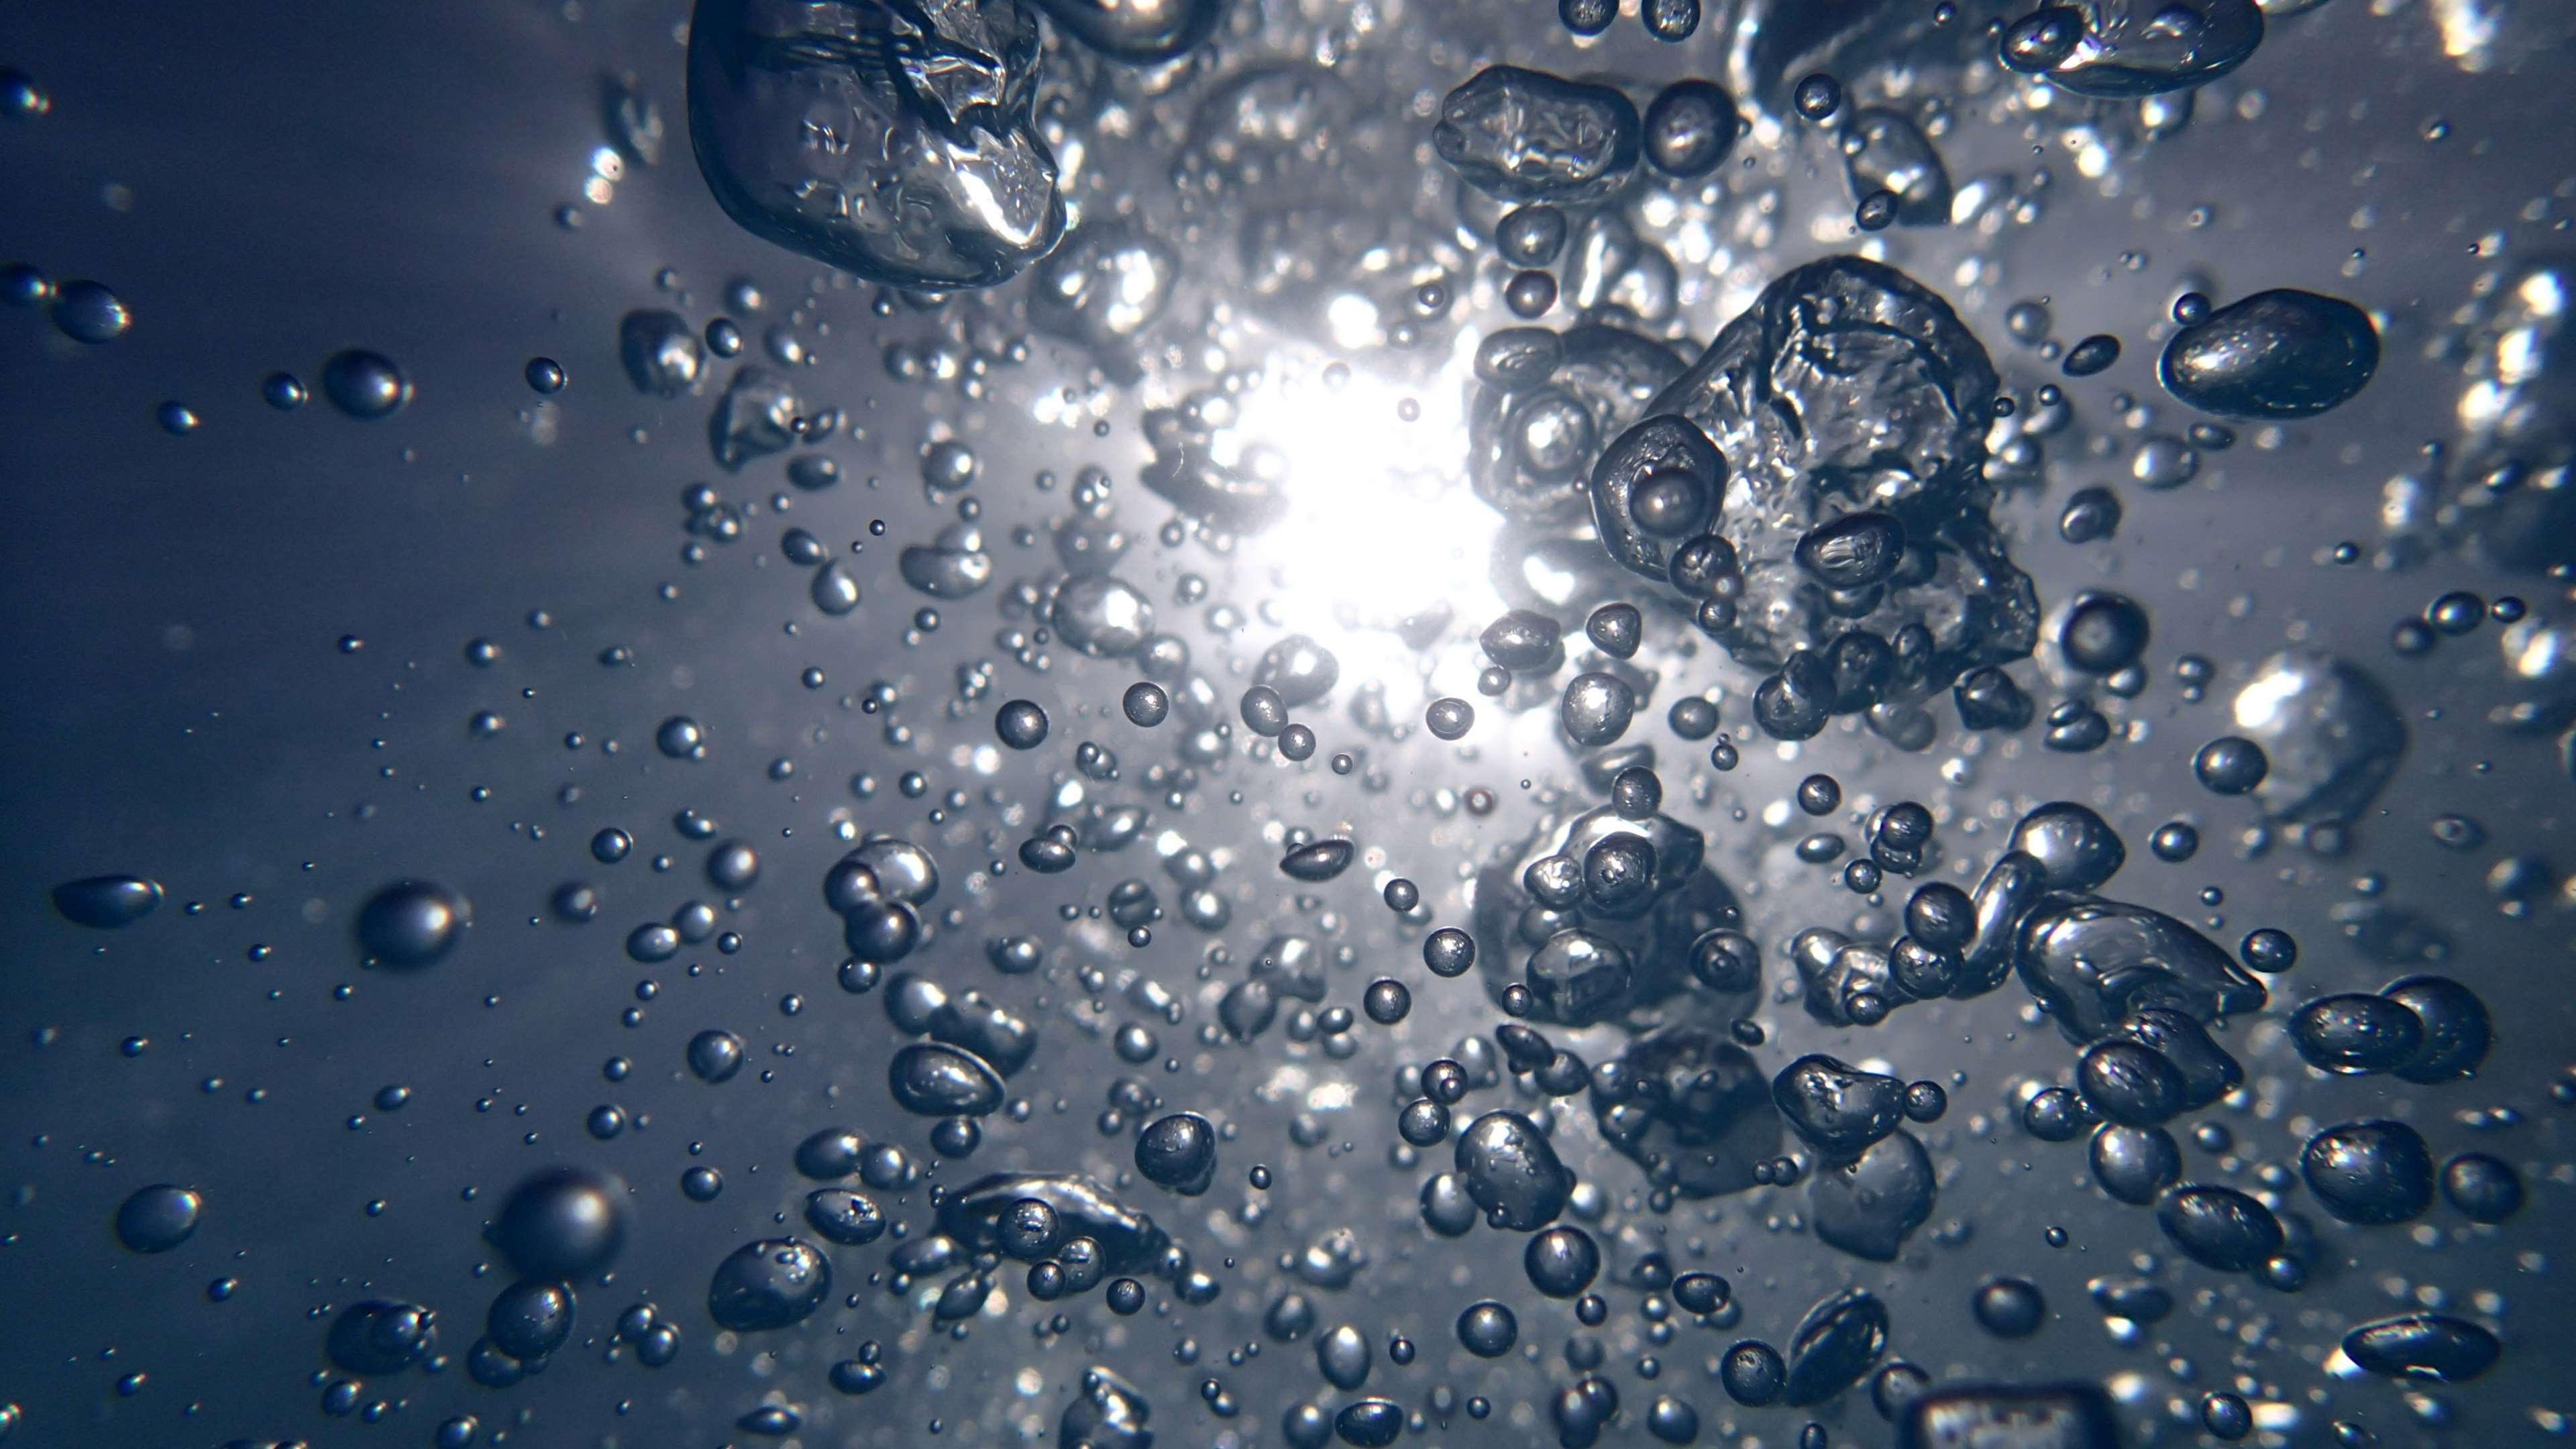 3840x2160 aqua, bubble, bubbly, clear, drop, fresh, light, liquid, splash, transparent, water, water bubbles 4k wallpaper JPG 462 kB. Mocah.org HD Desktop Wallpaper